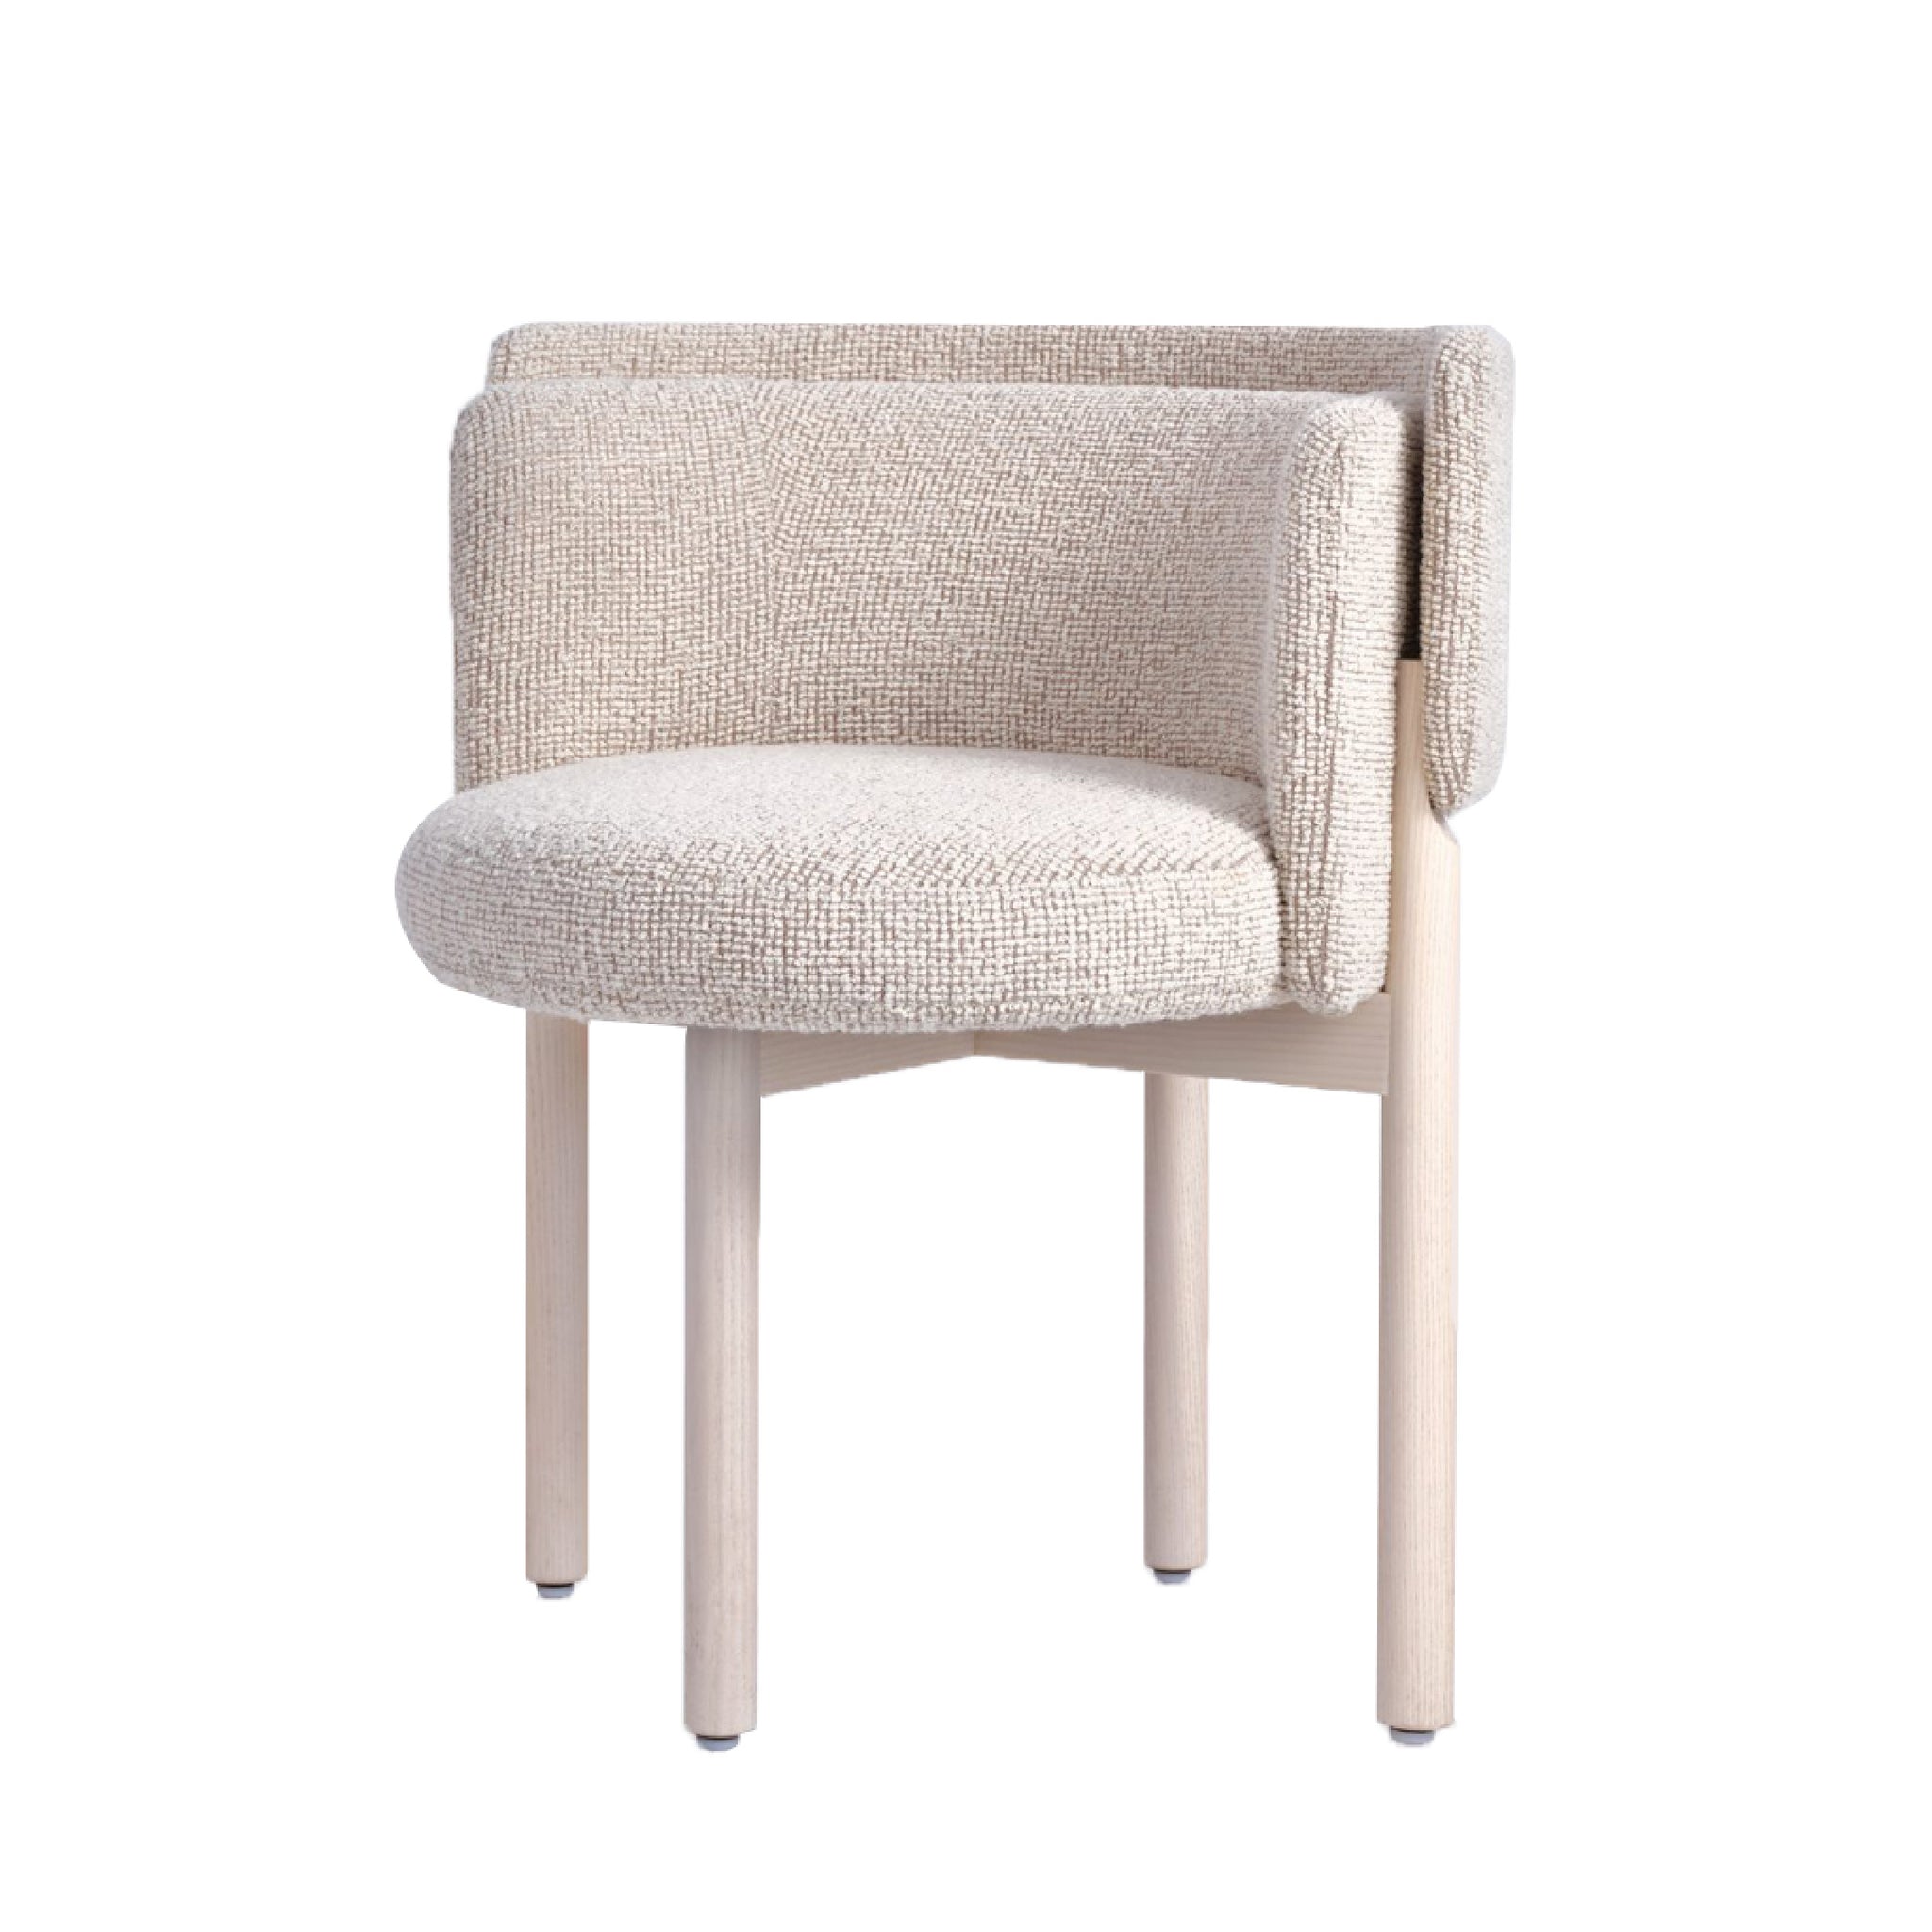 Ellery Designer Chair Classy Look